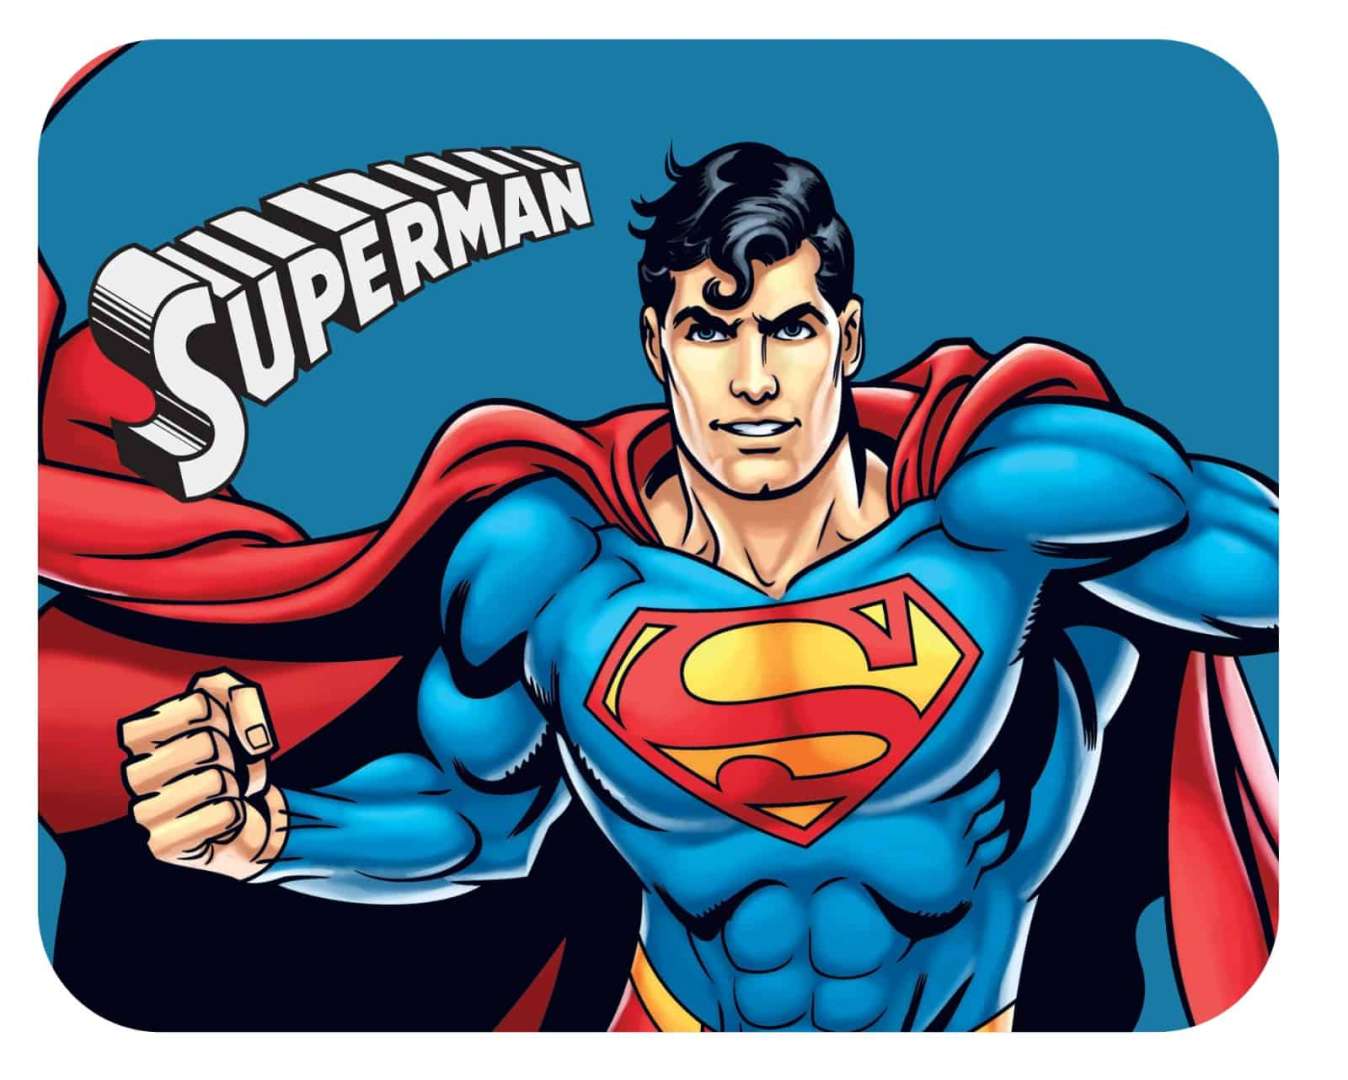 שטיח פלנל לחדר ילדים- דגם סופרמן